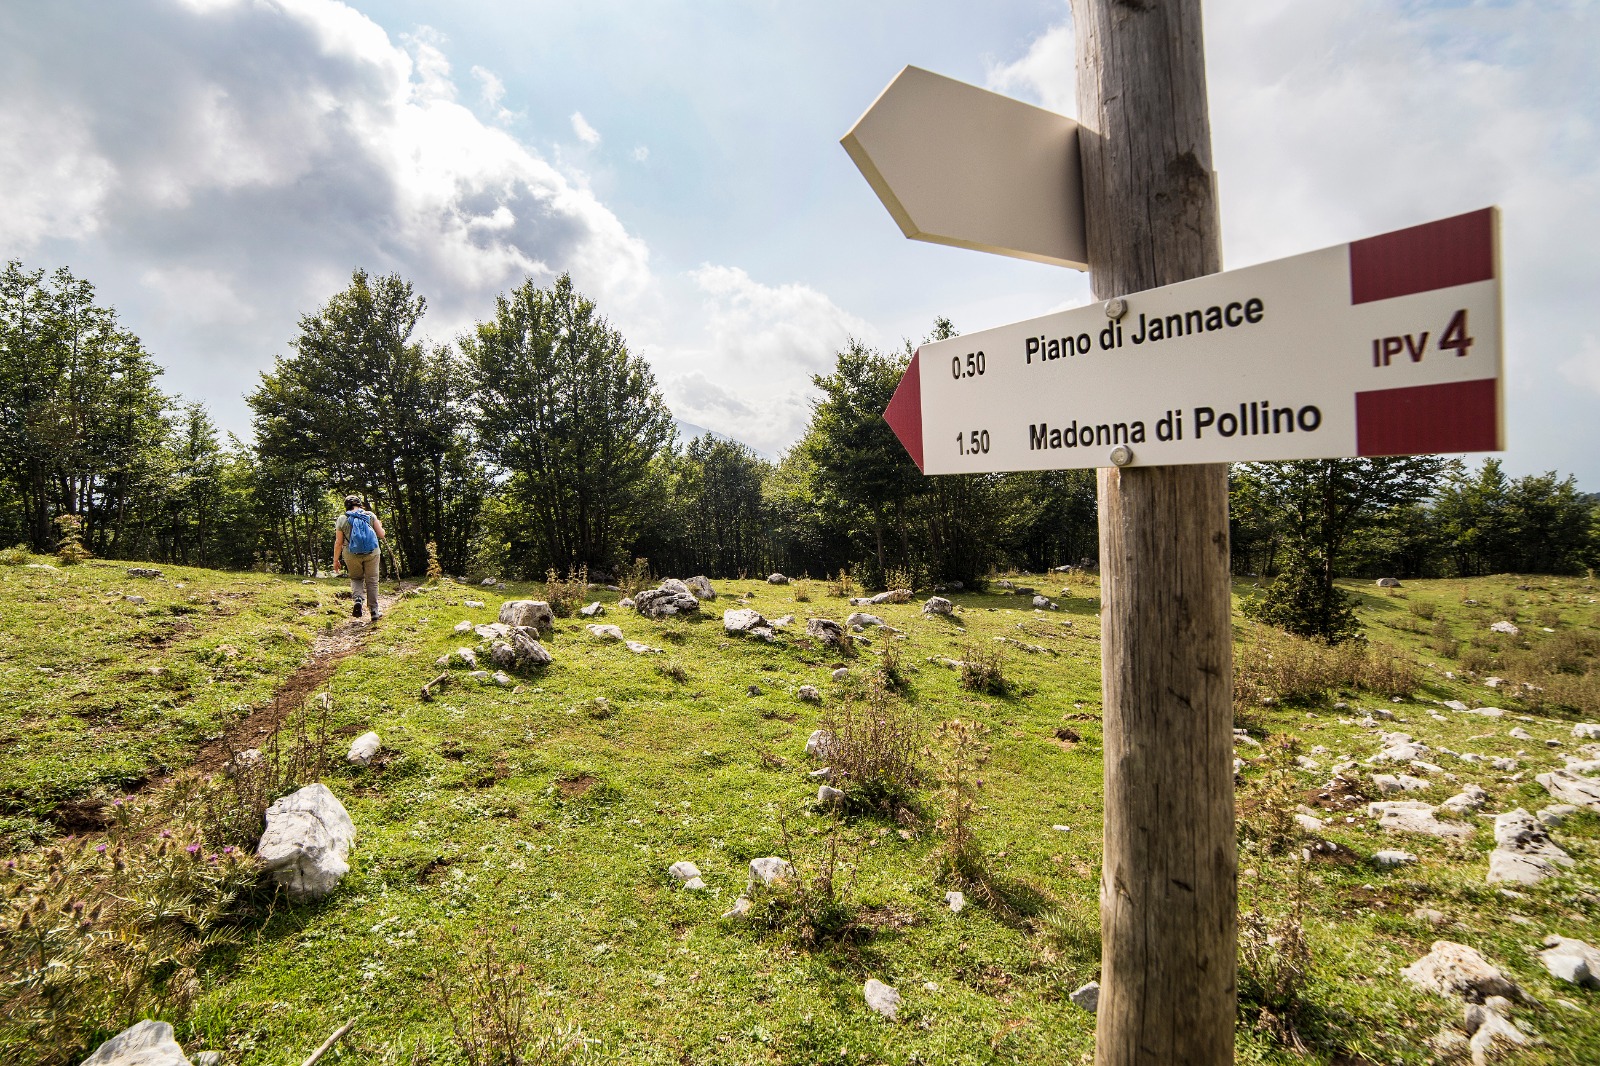 Parco Nazionale del Pollino